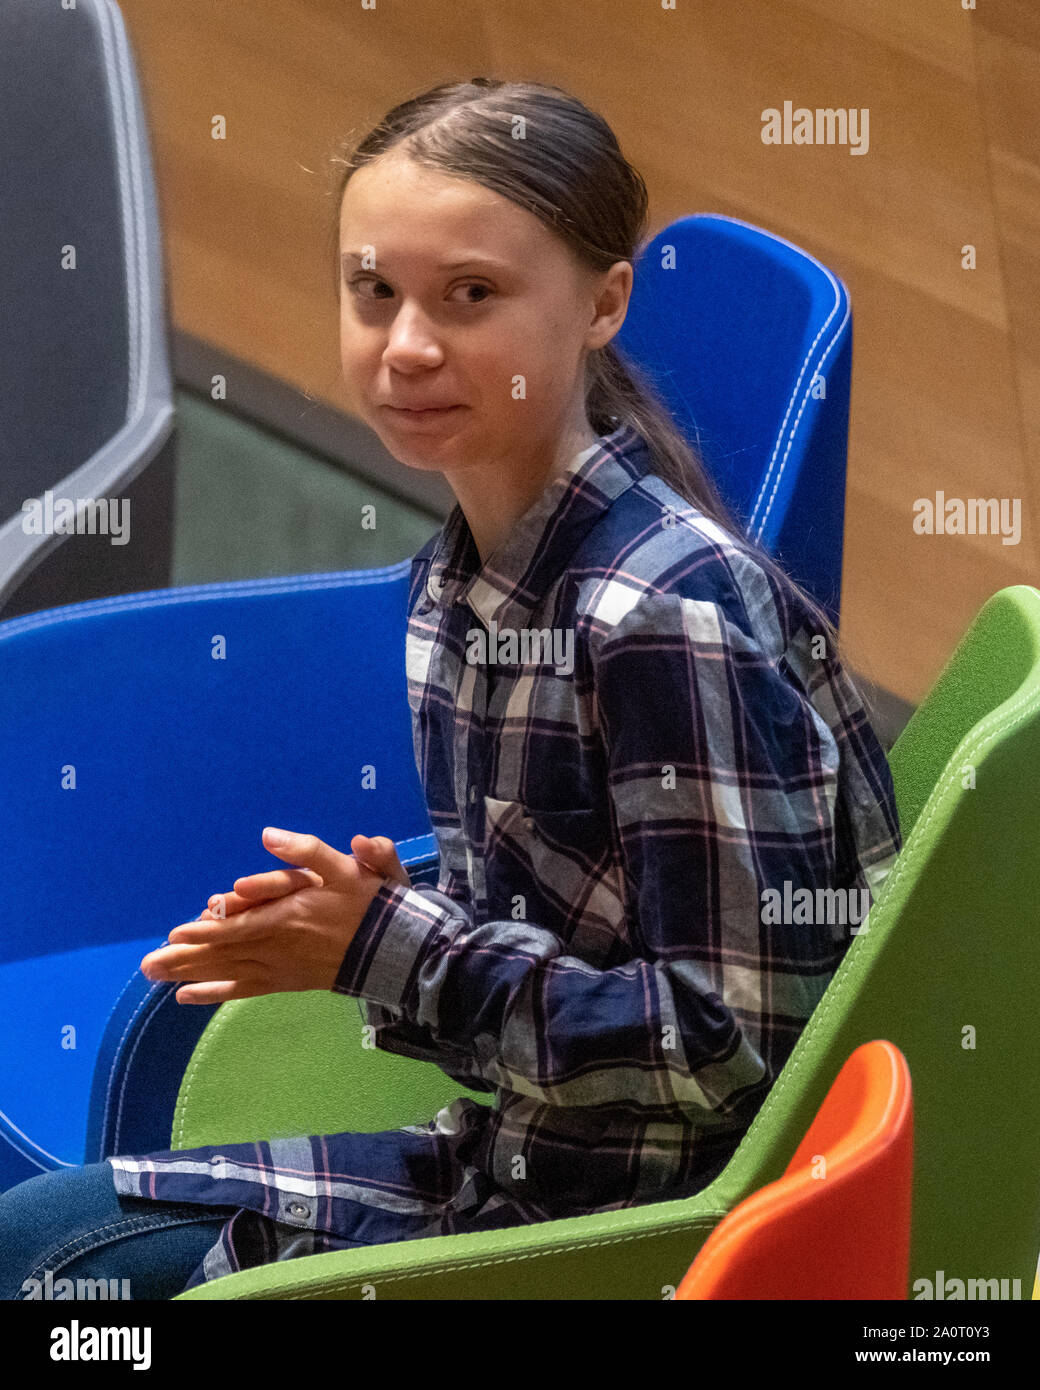 Nueva York, Estados Unidos, 21 de septiembre de 2019. Activista ambiental sueca Greta Thunberg aplaude al inicio de la Cumbre del Clima de la juventud en la Sede de Naciones Unidas en Nueva York. Crédito: Enrique Shore/Alamy Live News Foto de stock